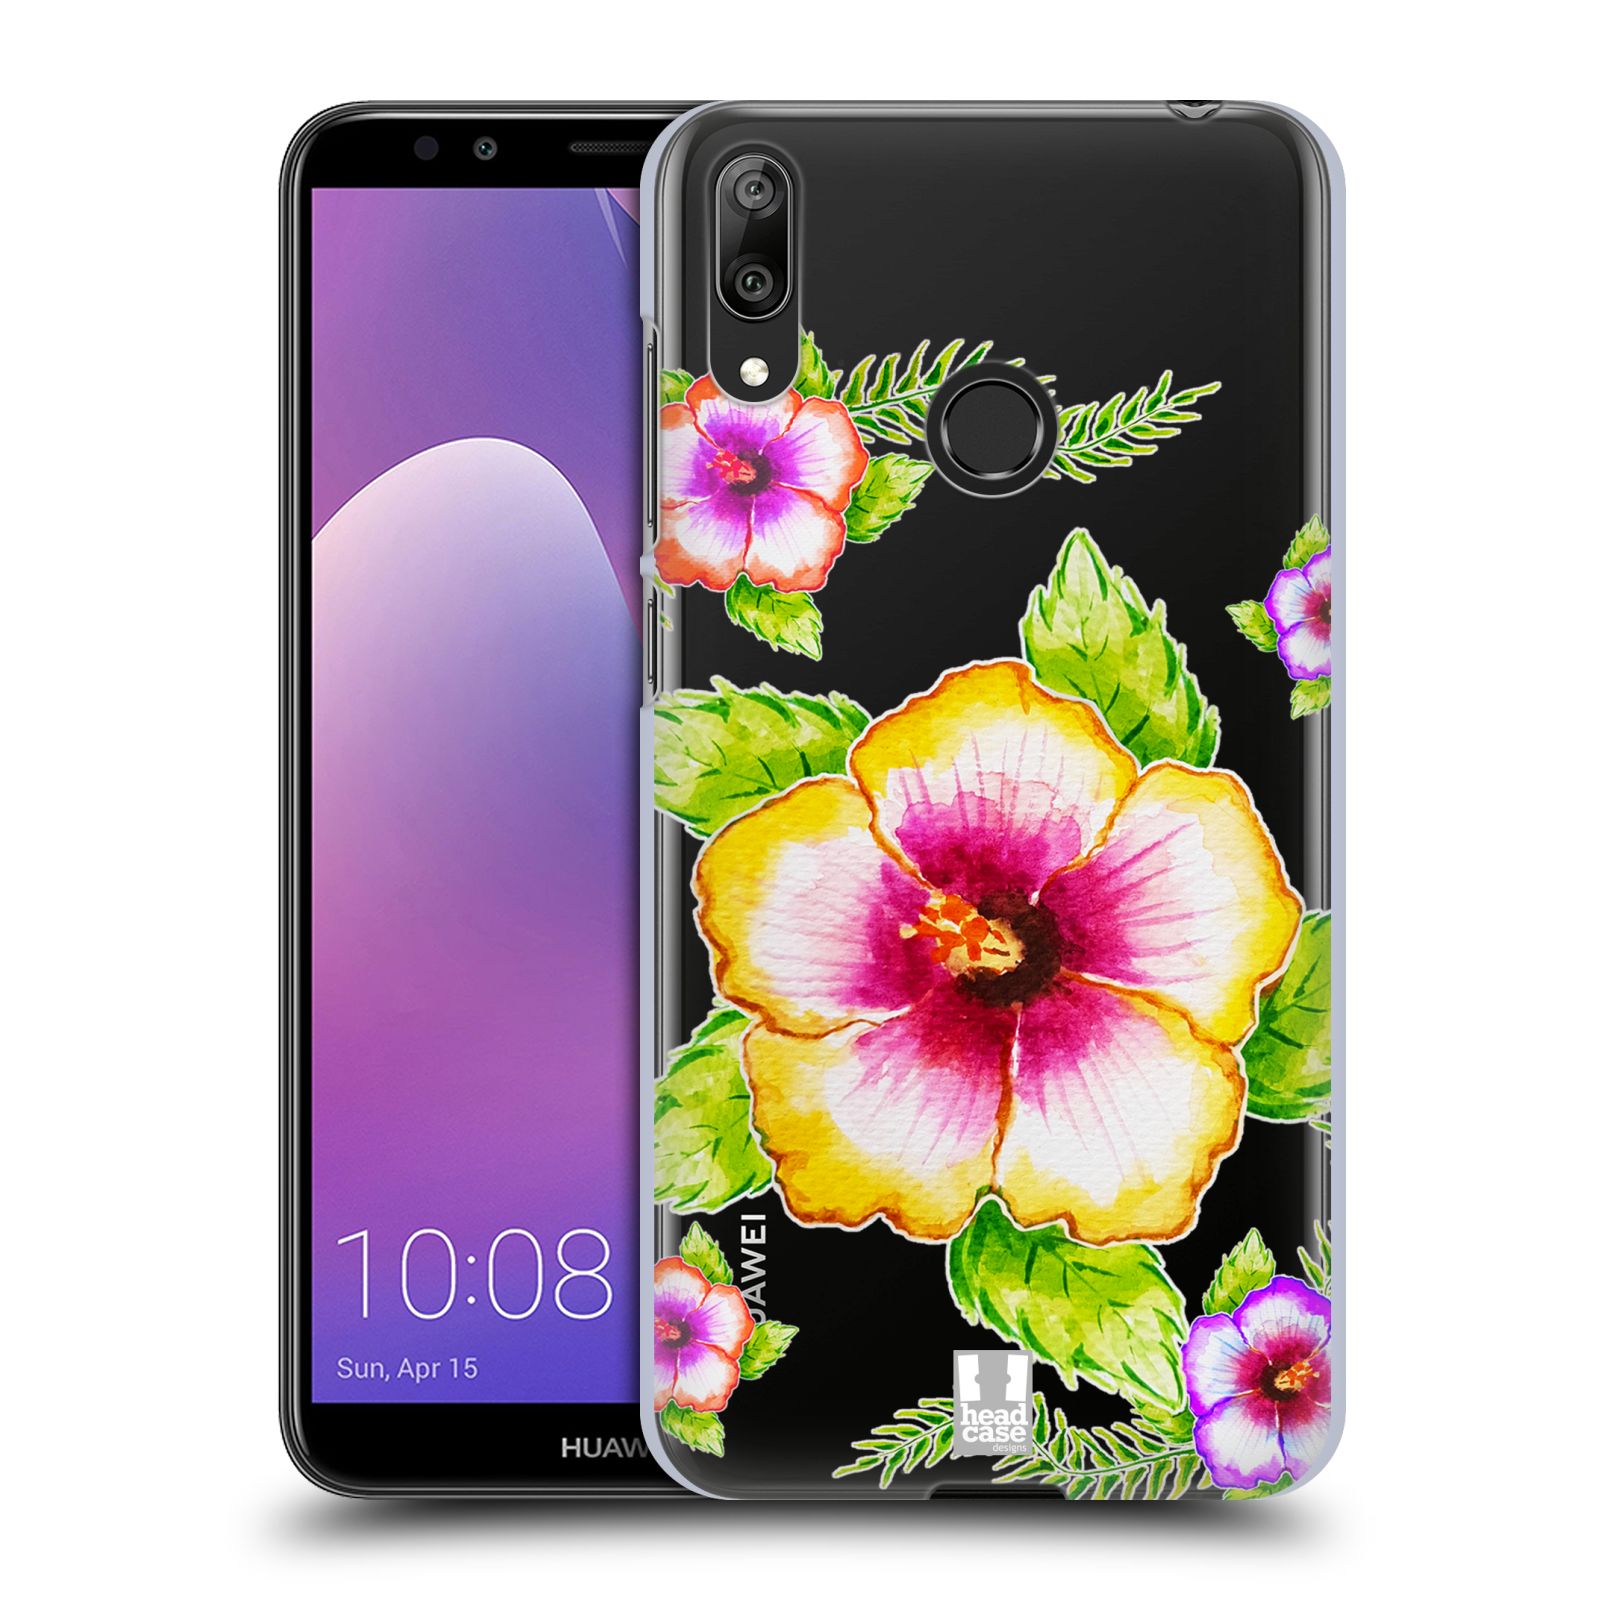 Pouzdro na mobil Huawei Y7 2019 - Head Case - Květina Ibišek vodní barvy